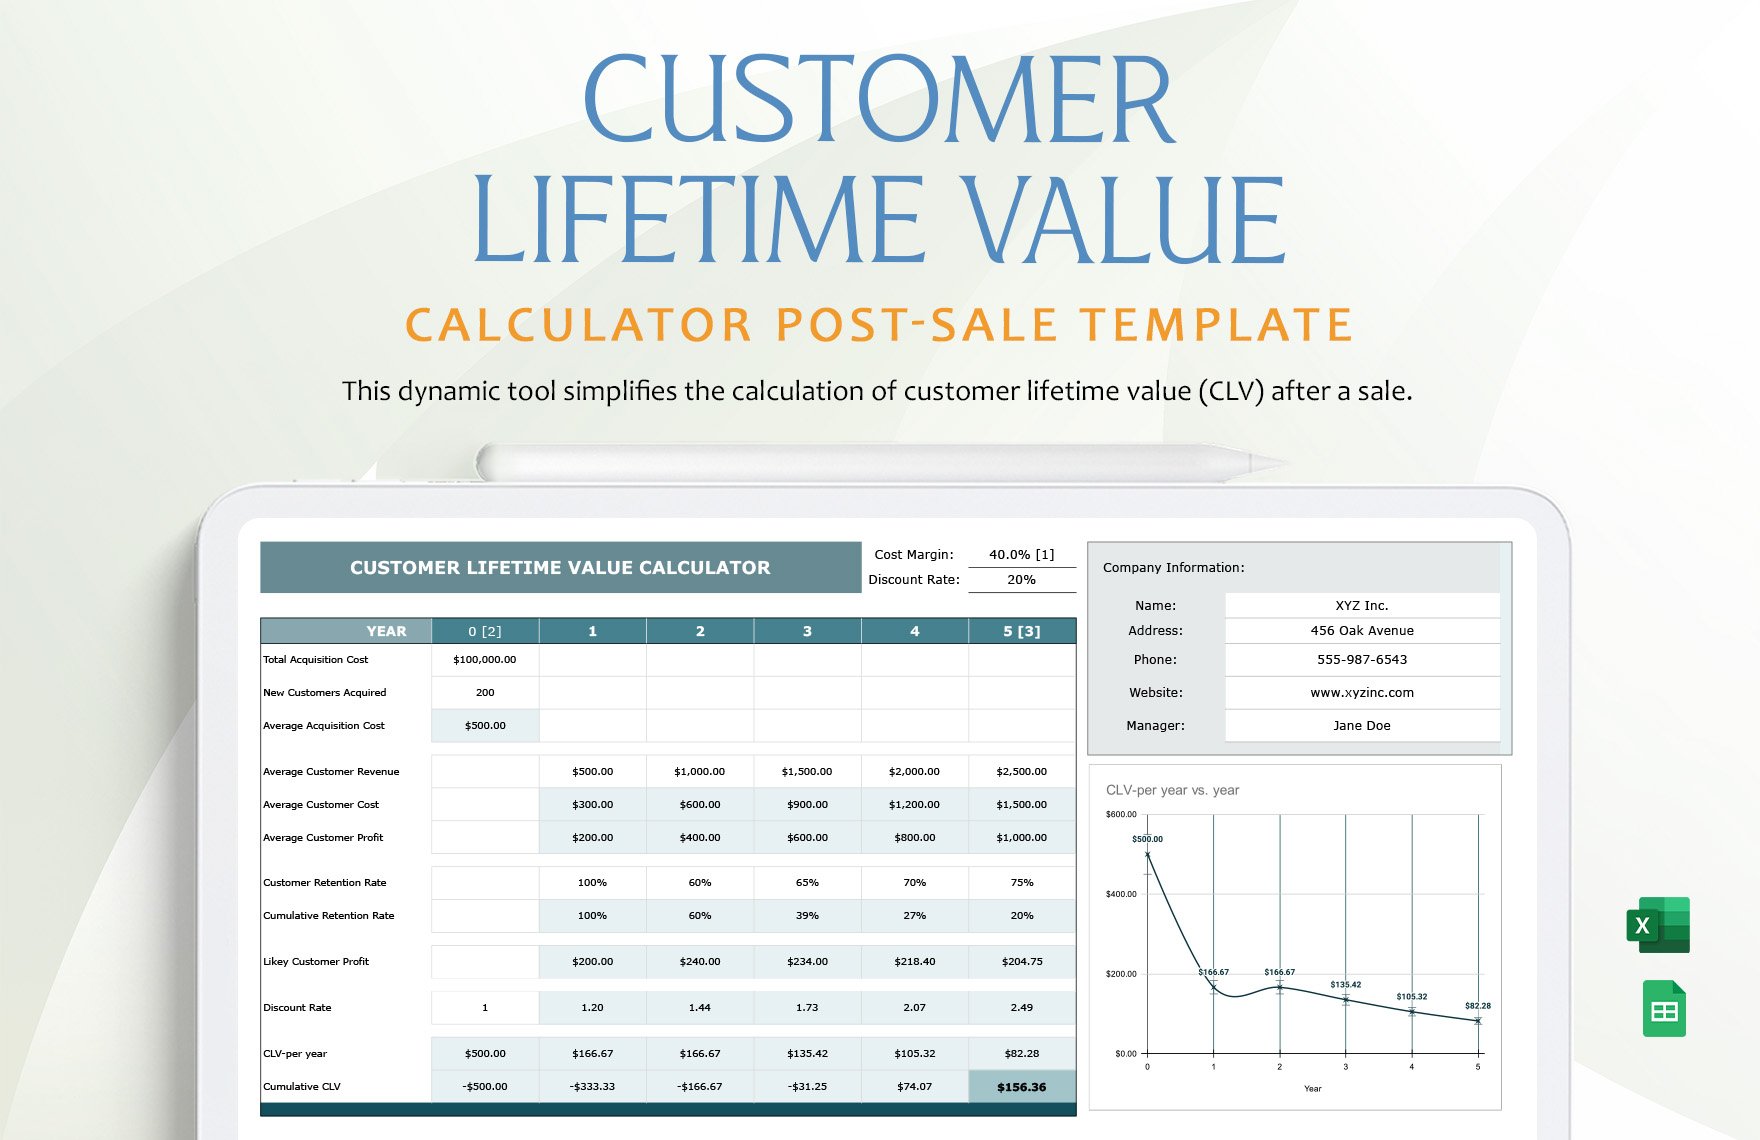 Customer Lifetime Value Calculator Post-Sale Template